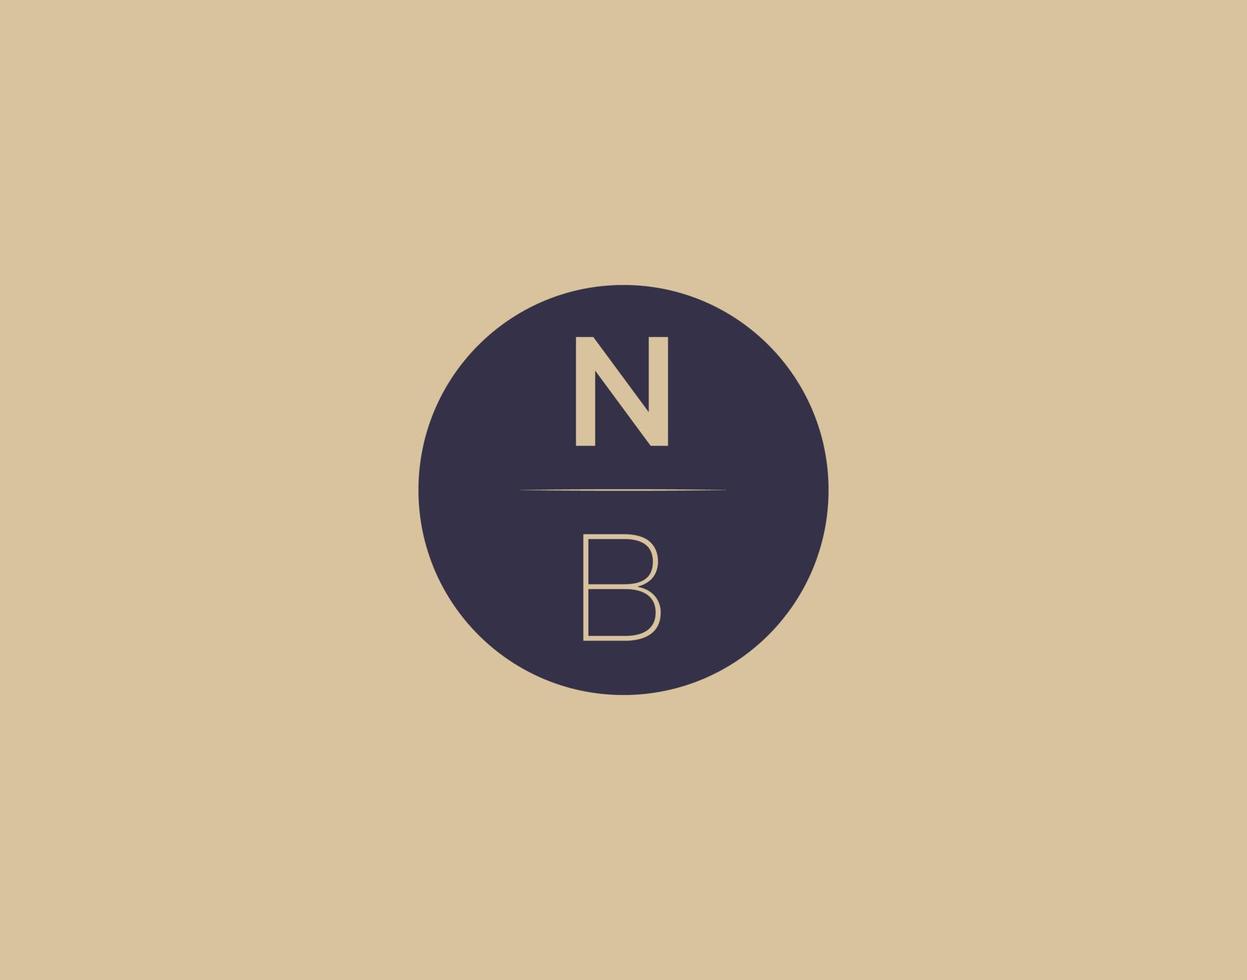 NB letter modern elegant logo design vector images